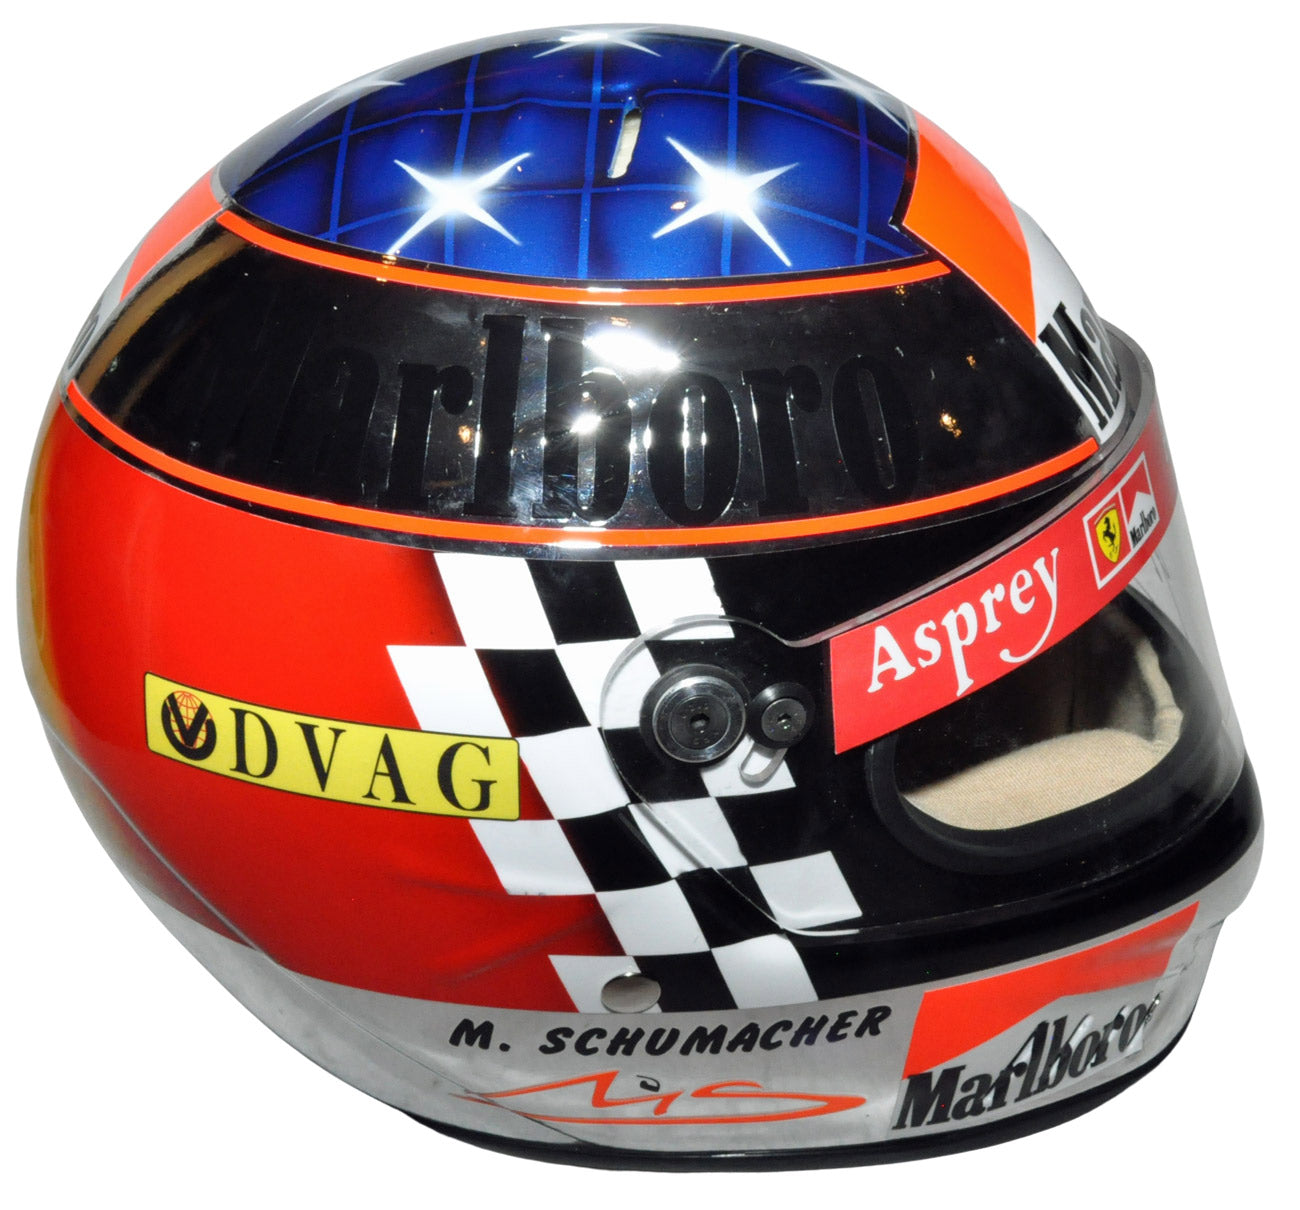 Michael Schumacher Signed Ferrari 1998 Japan F1 Grand Prix Full Scale Replica Helmet